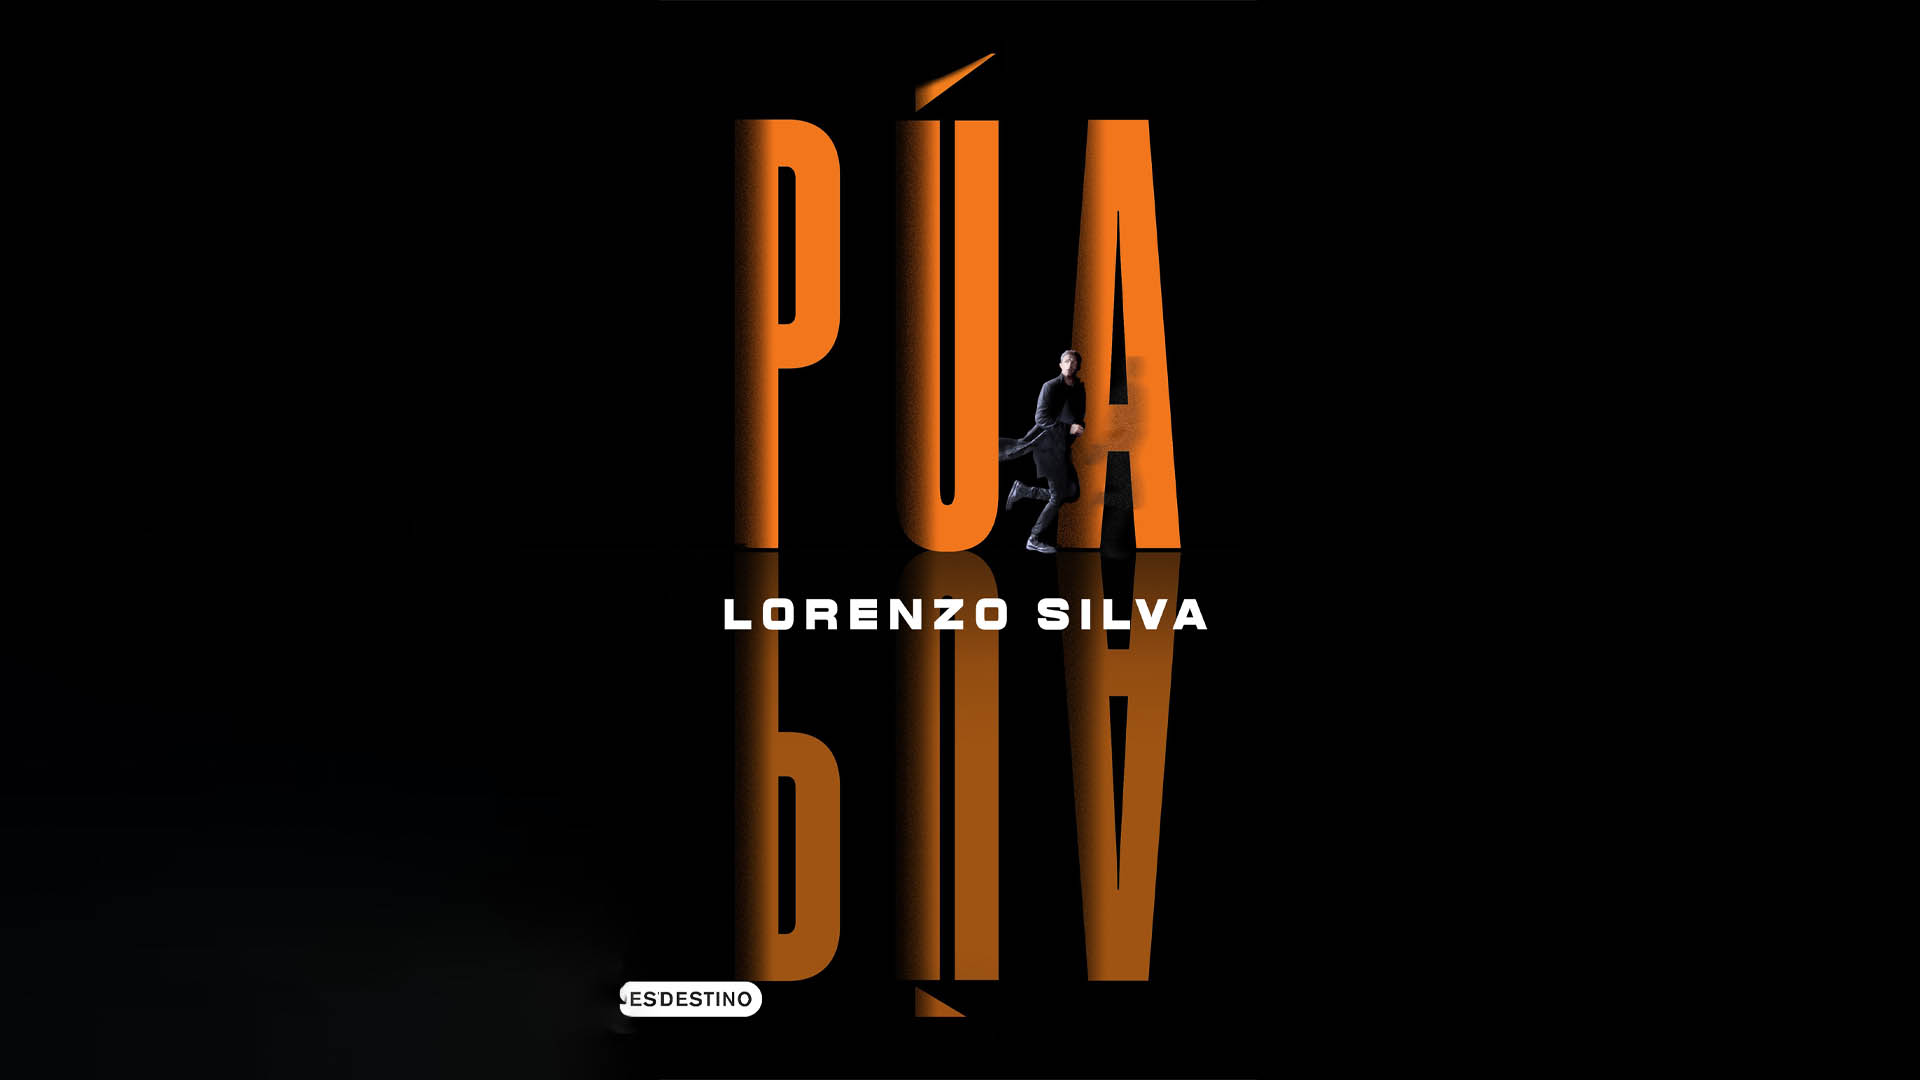 Un agente secreto retirado y una chica que necesita ser rescatada: el escritor español Lorenzo Silva regresa al thriller con “Púa”